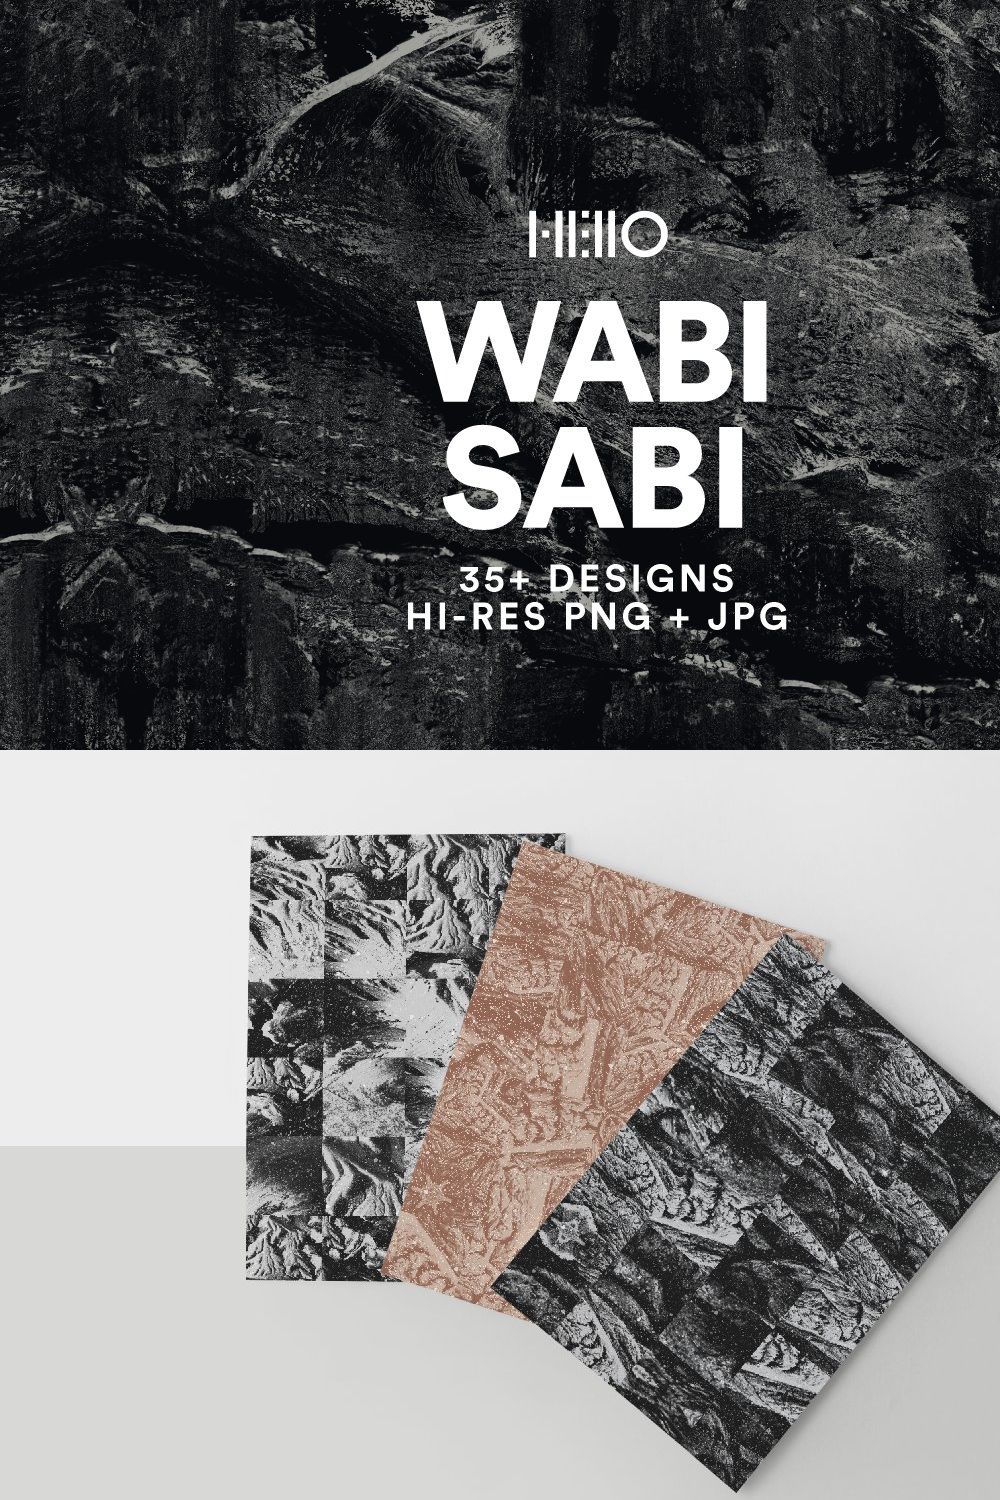 Wabi Sabi Natural Textures pinterest preview image.